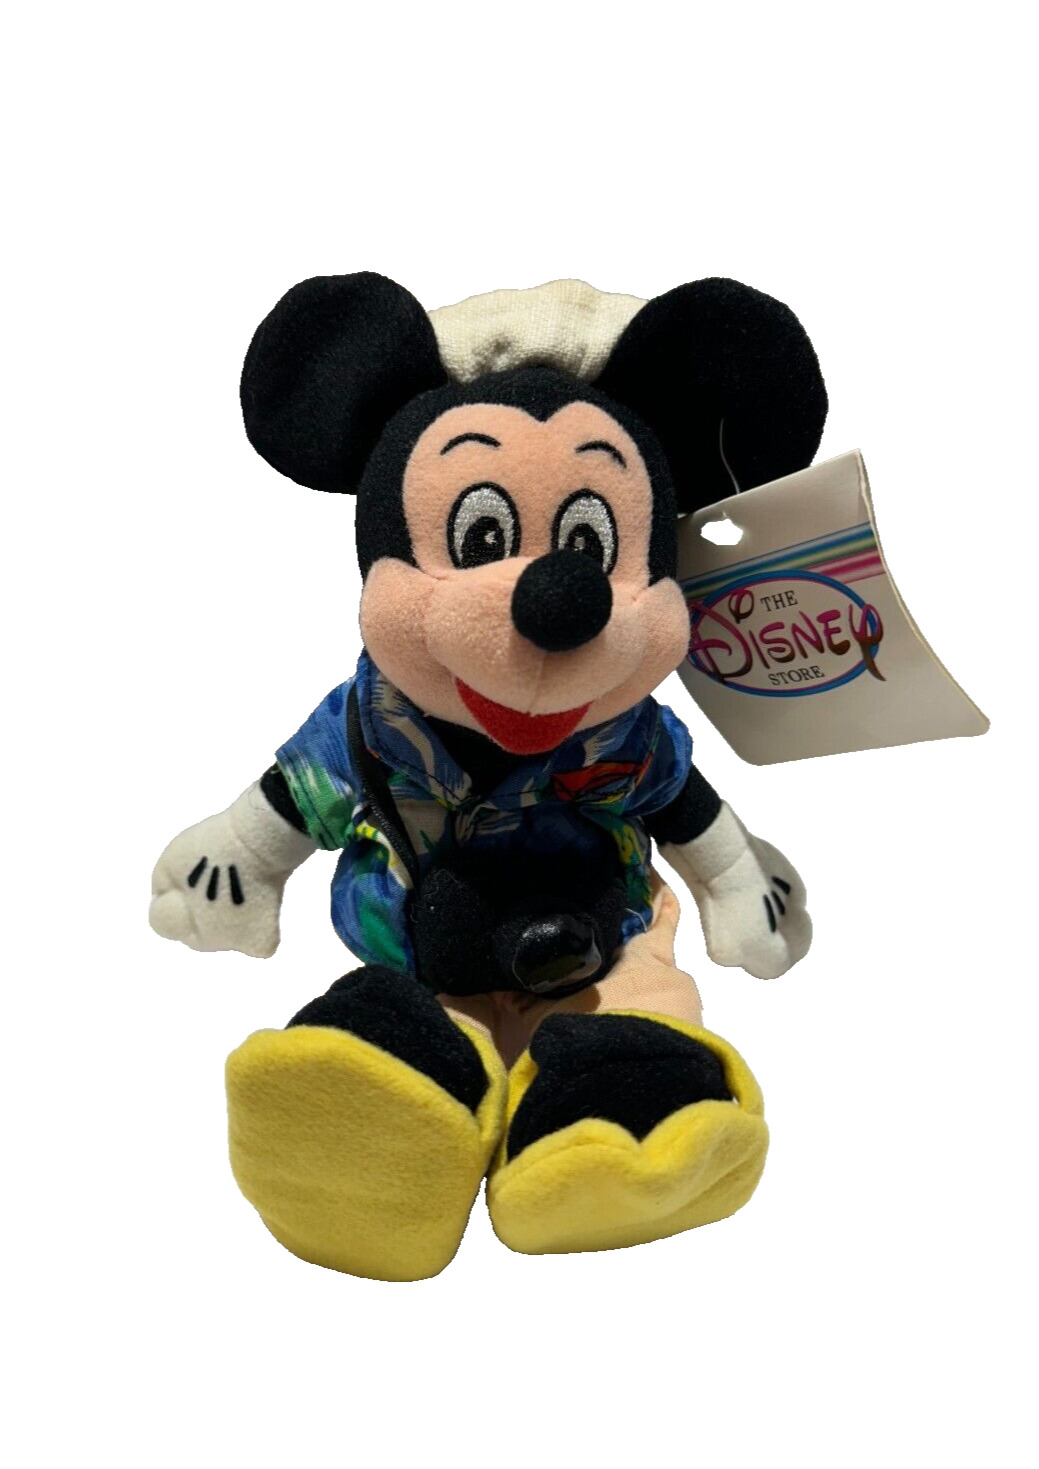 Disney Store Tourist Mickey Mouse Bean Bag Plush 8\